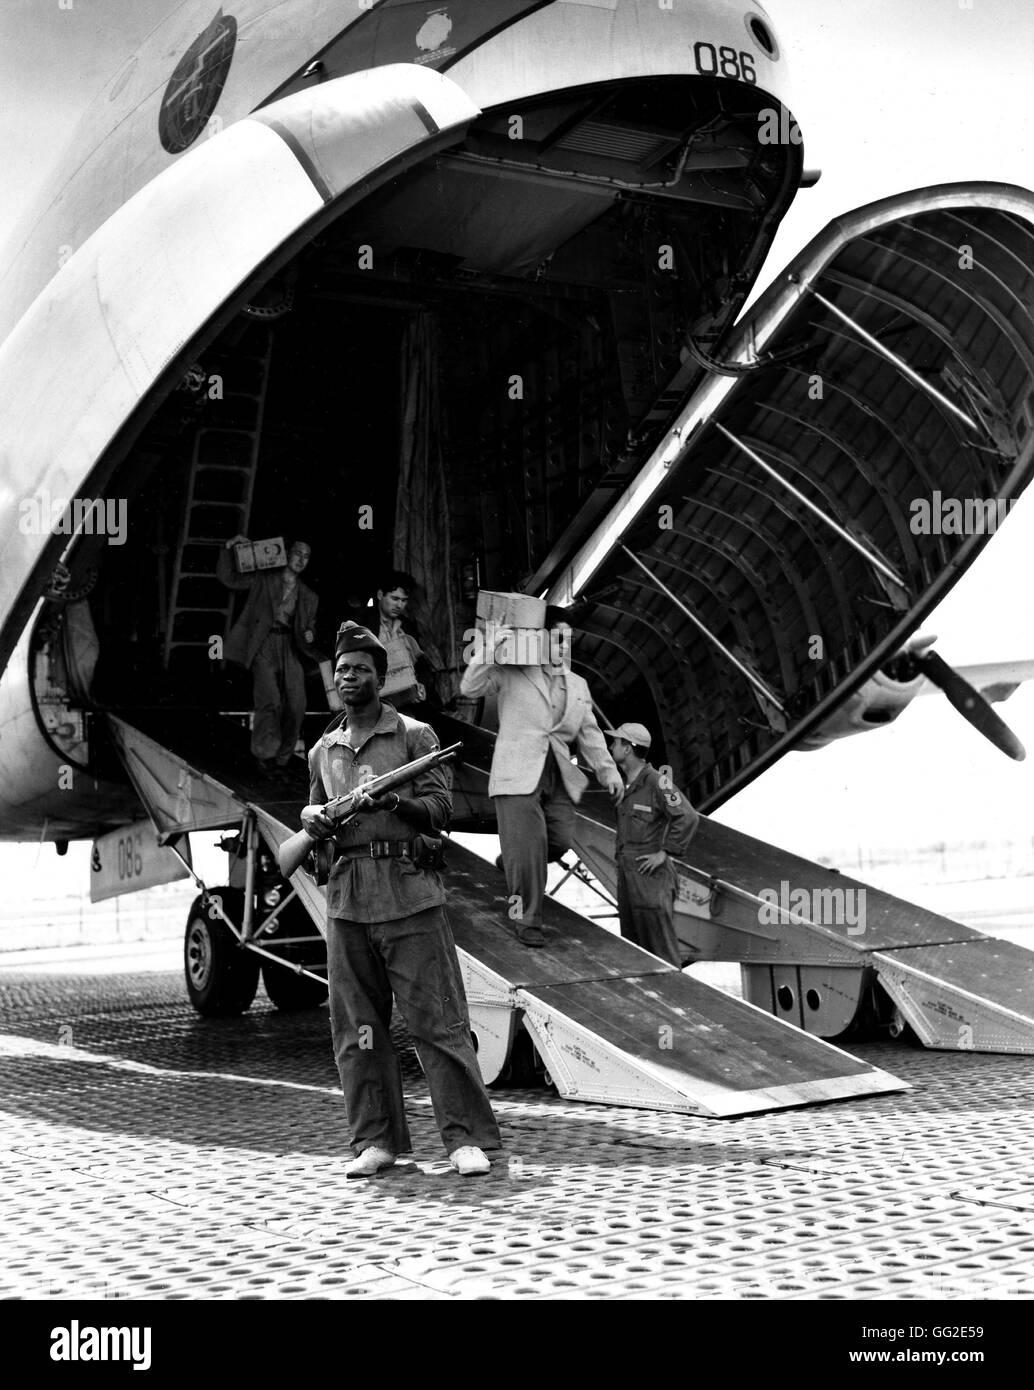 Dans un aéroport en Indochine, le personnel français de descendre un C124 'Globemaster' Douglas de l'US Air Force. Un soldat est maintenant regarder le 3 mai 1954 Guerre d'indochine photo Banque D'Images